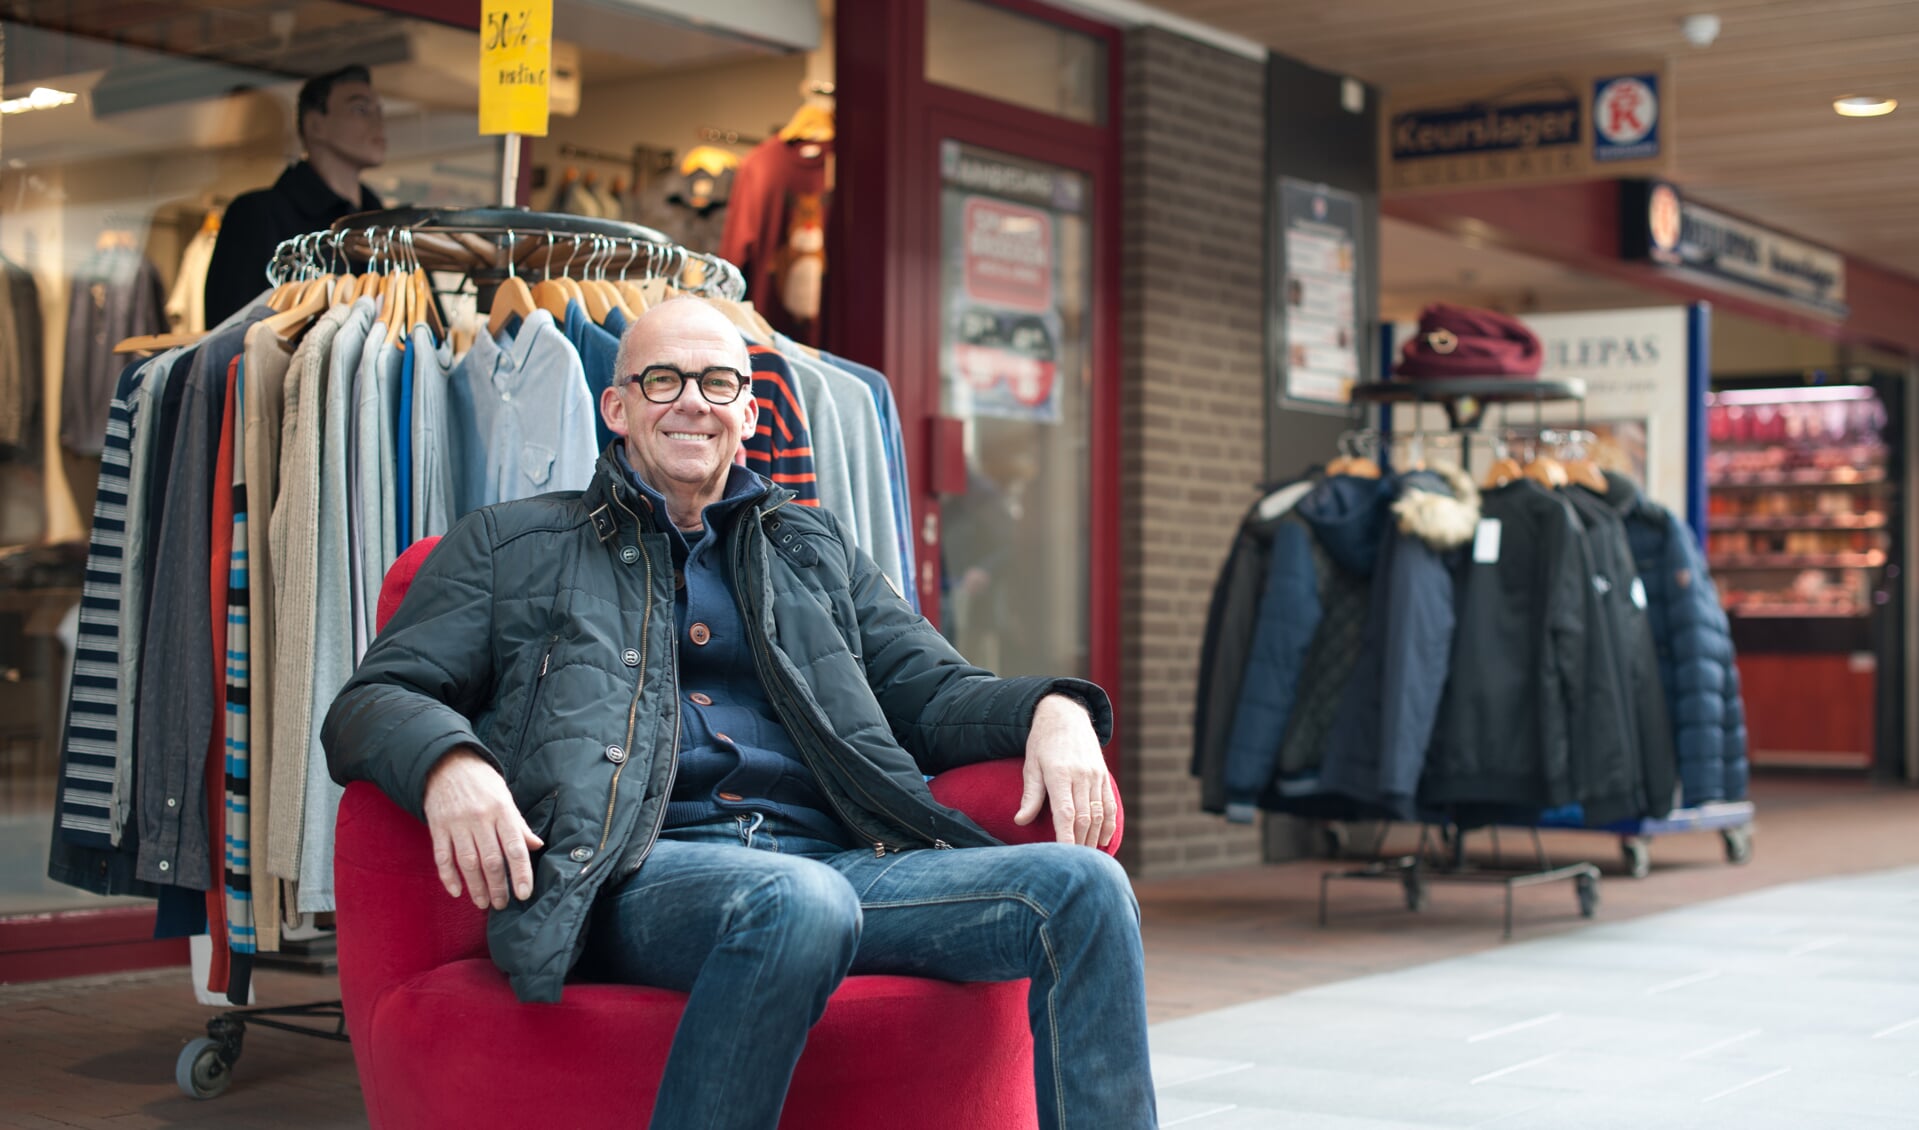 Voorzitter Jacques Smits van Centrummanagement Boxmeer op de kenmerkende rode stoel. (foto: Patricia de Ryck)